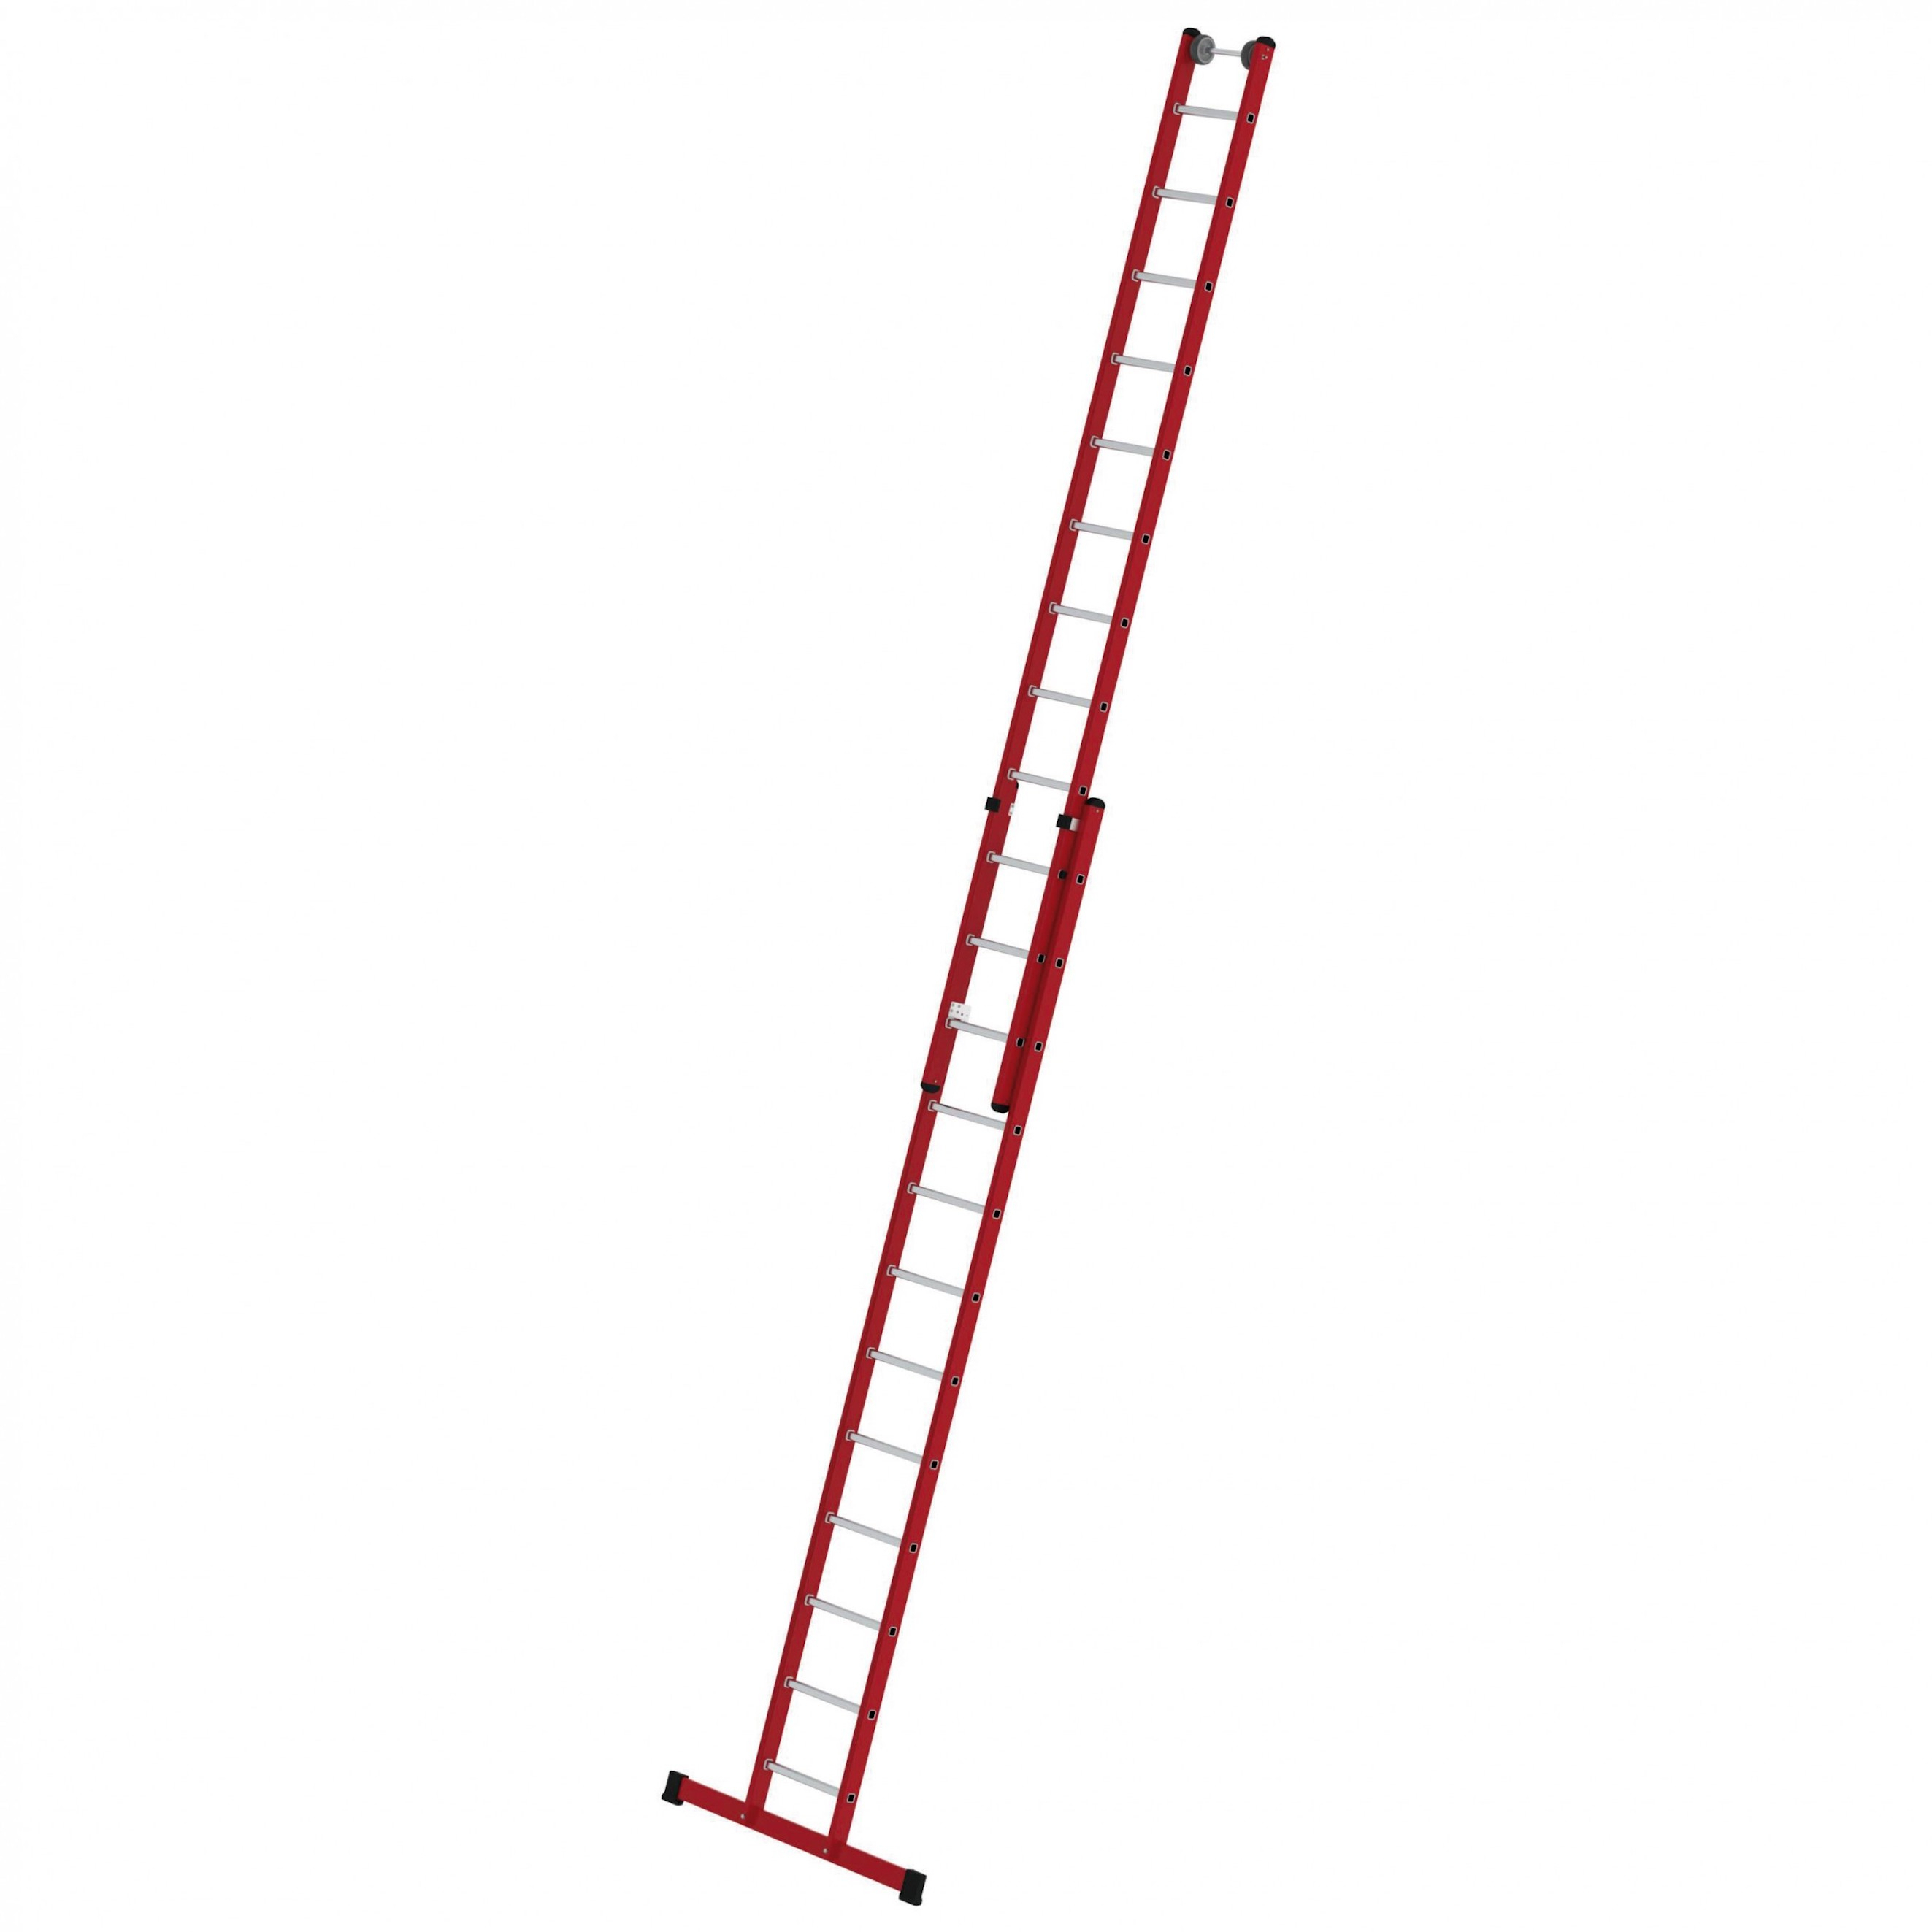 Kunststoff-Schiebeleiter, 2-teilig, mit Standardtraverse 2x8 Sprossen/Stufen